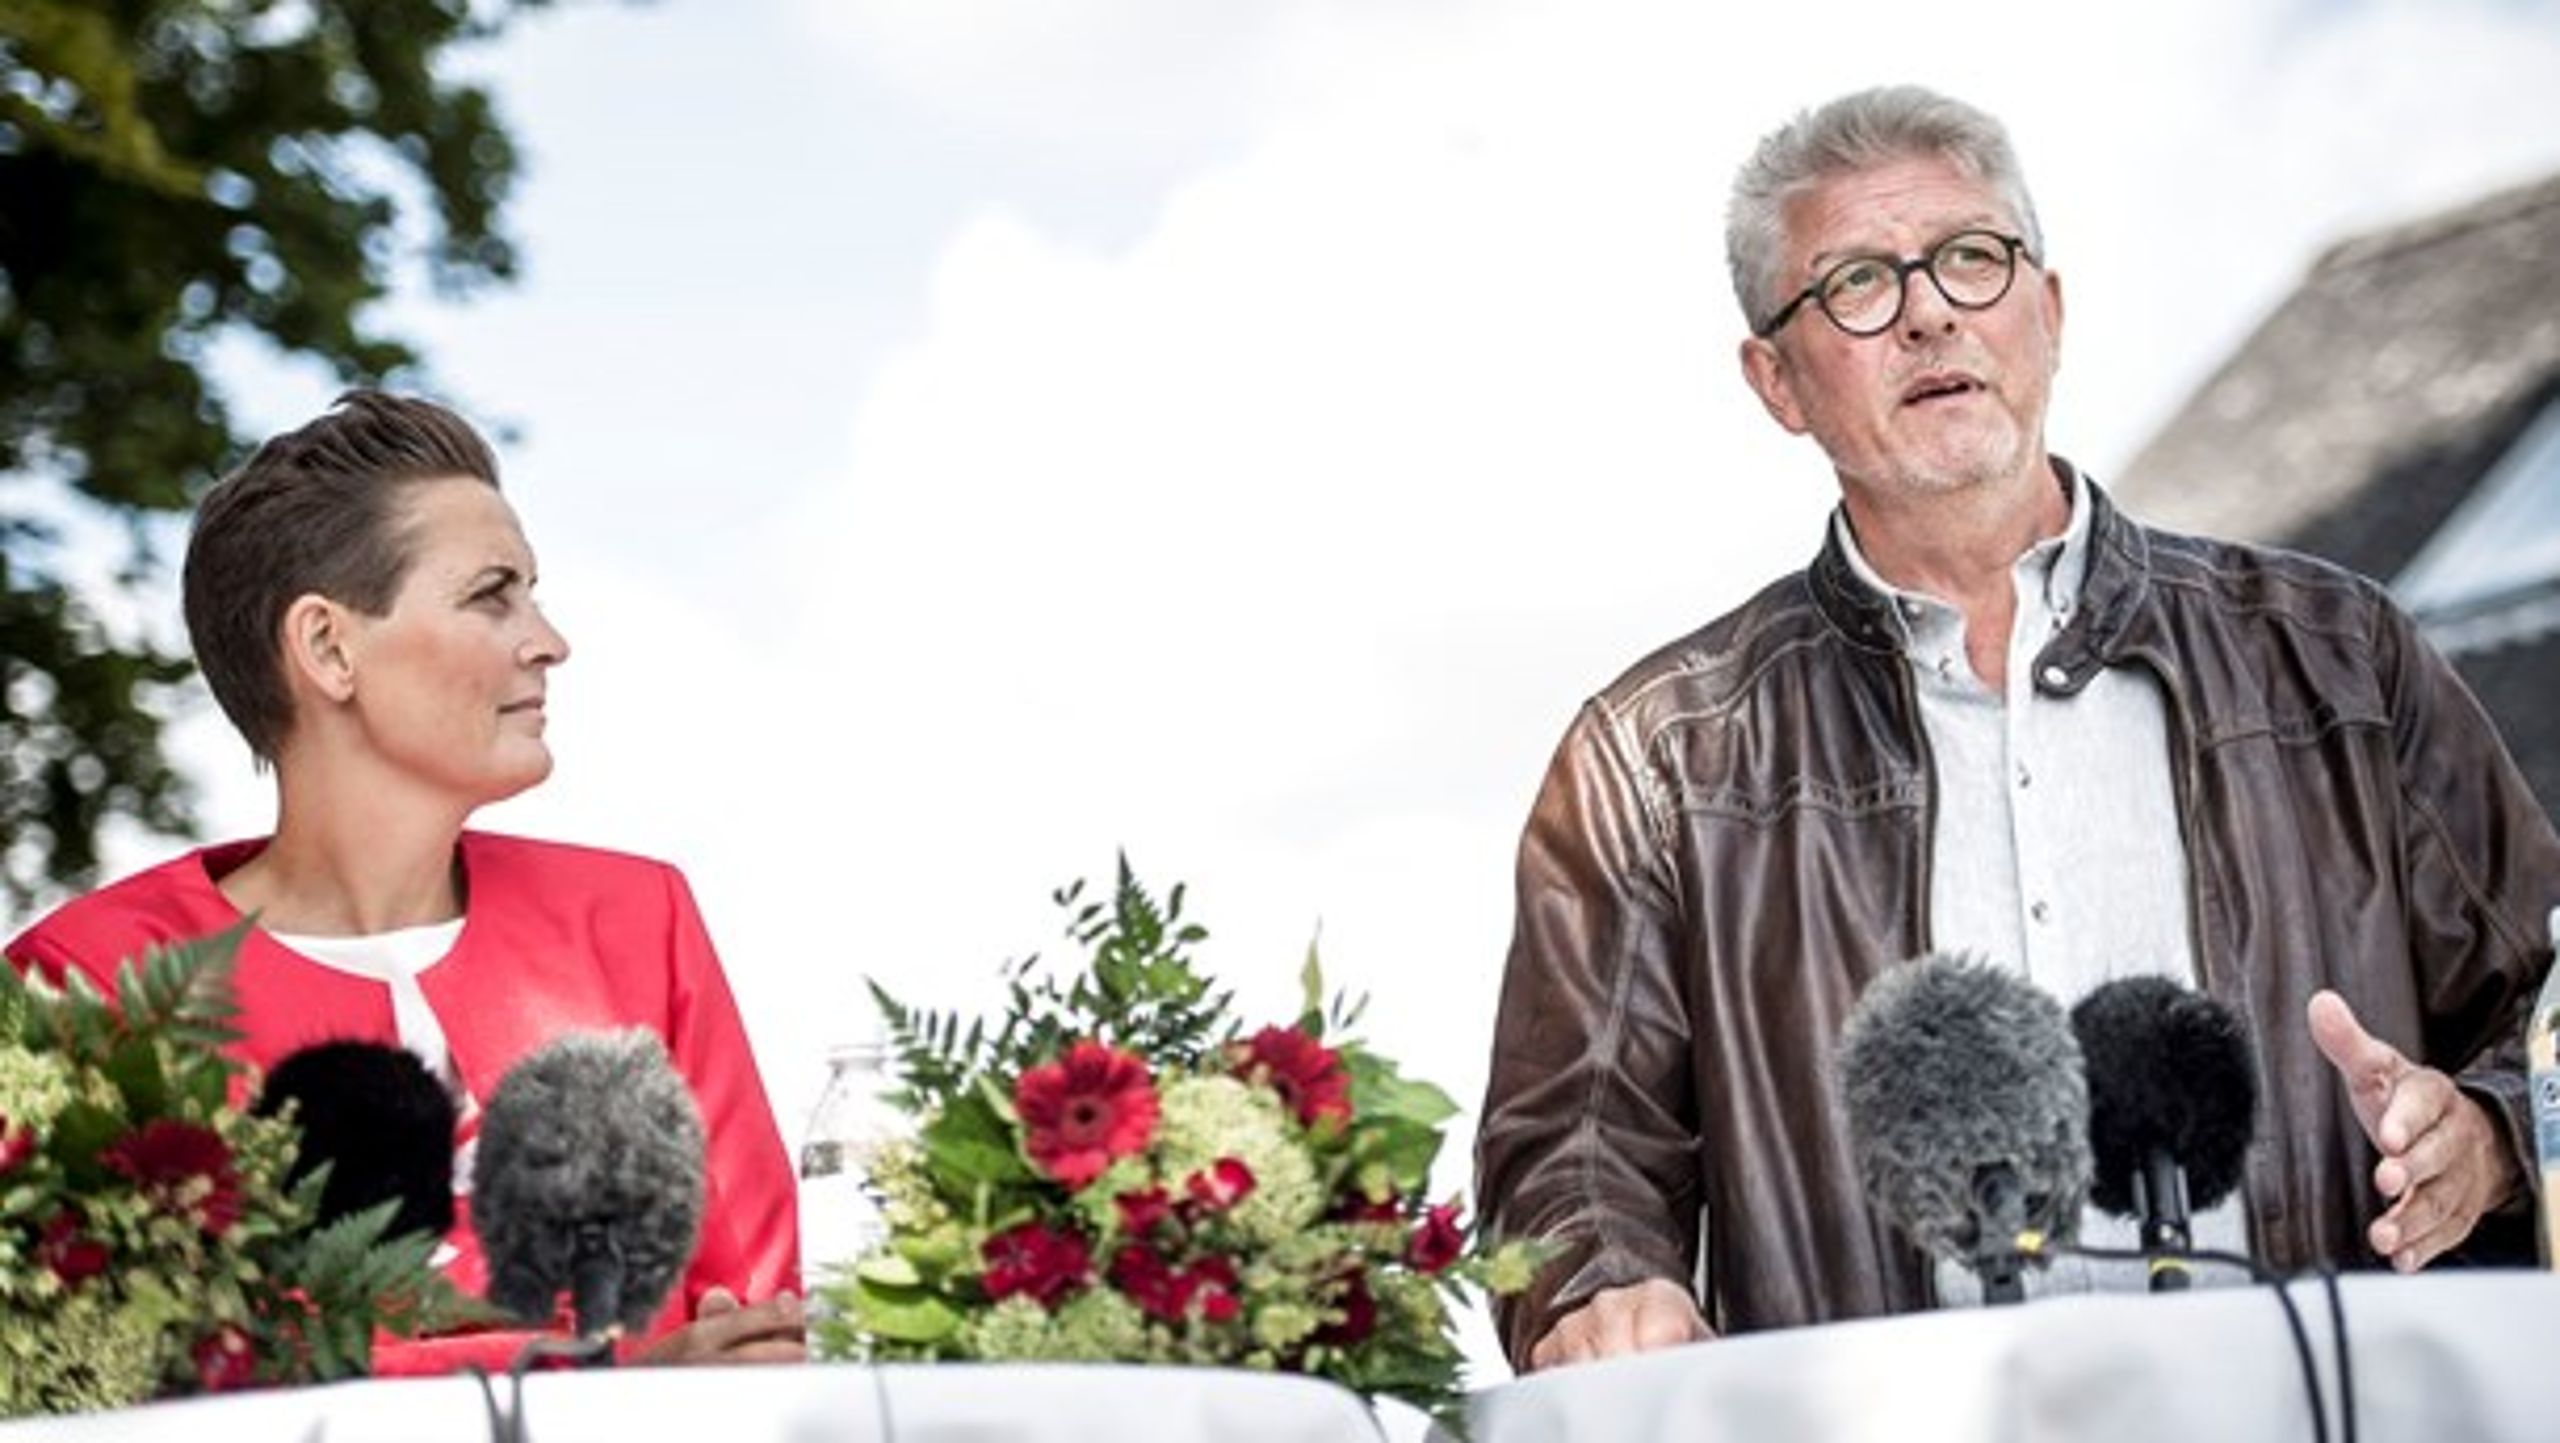 SF's formand Pia Olsen Dyhr stod i 2014 'fadder' til den politiske aftale om Togfonden DK og realisering af timdemodellen. Nu kæmper partiets transportordfører, Karsten Hønge (<i>til højre, red.</i>), for at holde live i planerne.